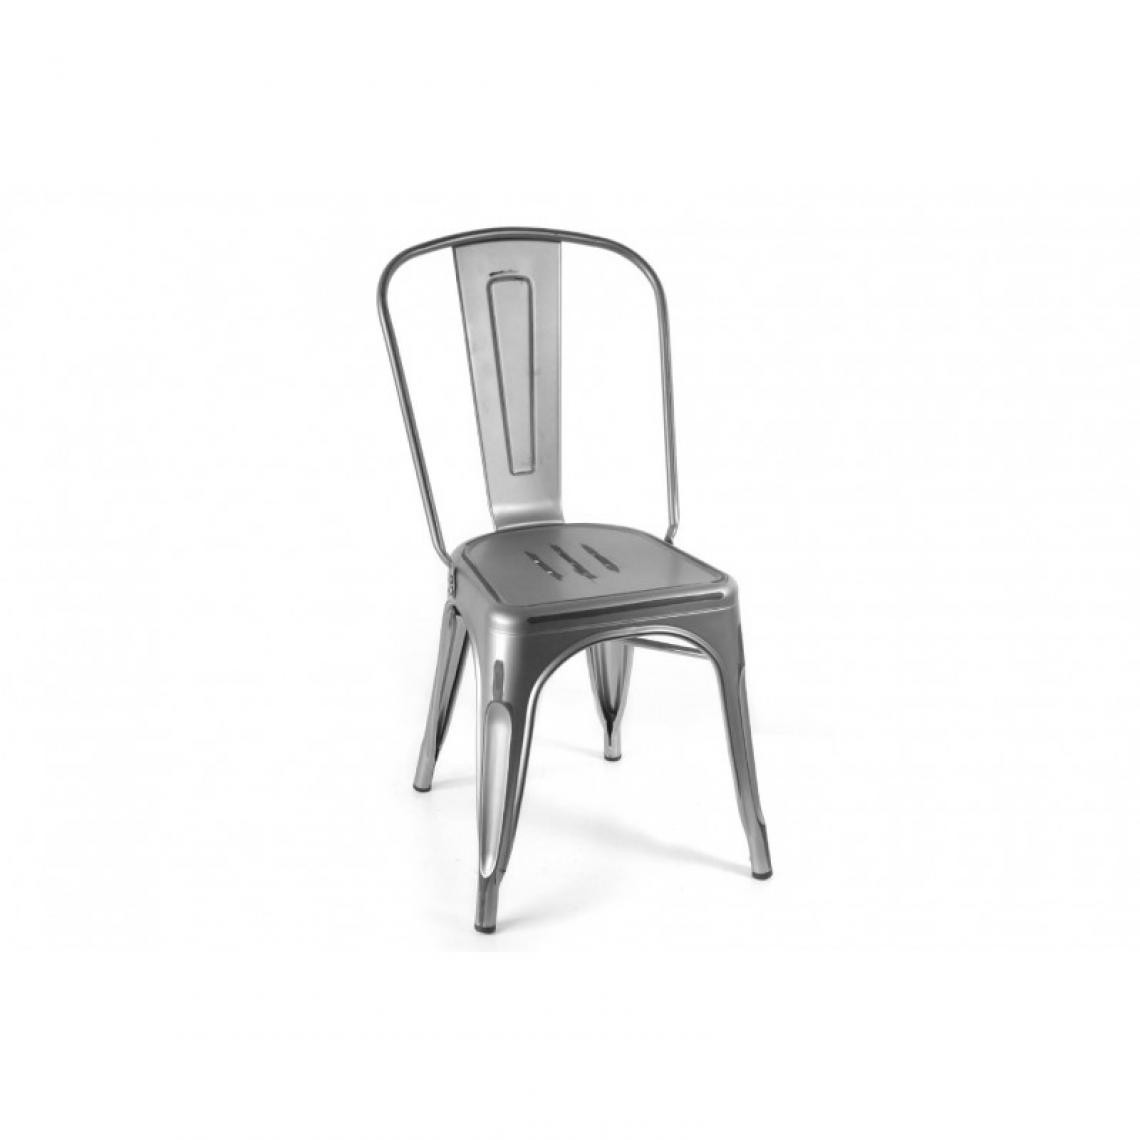 Webmarketpoint - Chaise de cuisine en métal gris style urbain cm 51 x 44x 86 h - Chaises